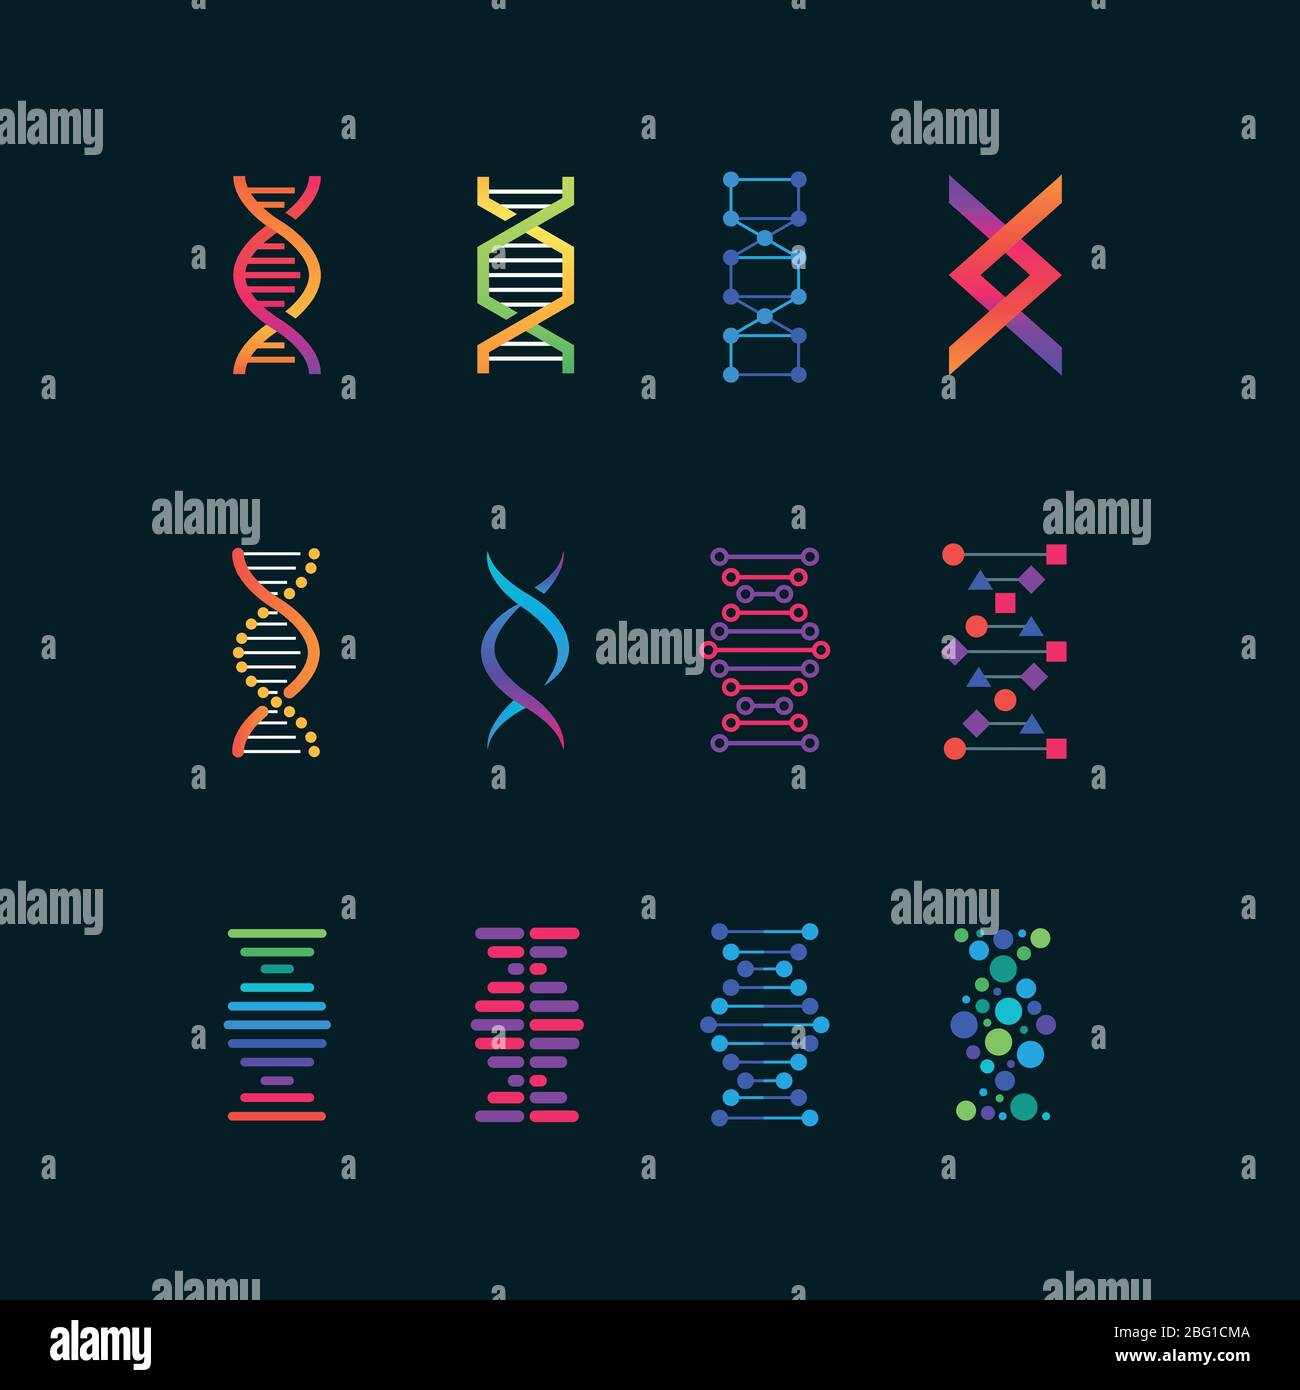 Simboli della tecnologia di ricerca del dna umano. Icone vettoriali a spirale per biomedica. Ricerca chimica e medicina, illustrazione genomica di Helix Illustrazione Vettoriale